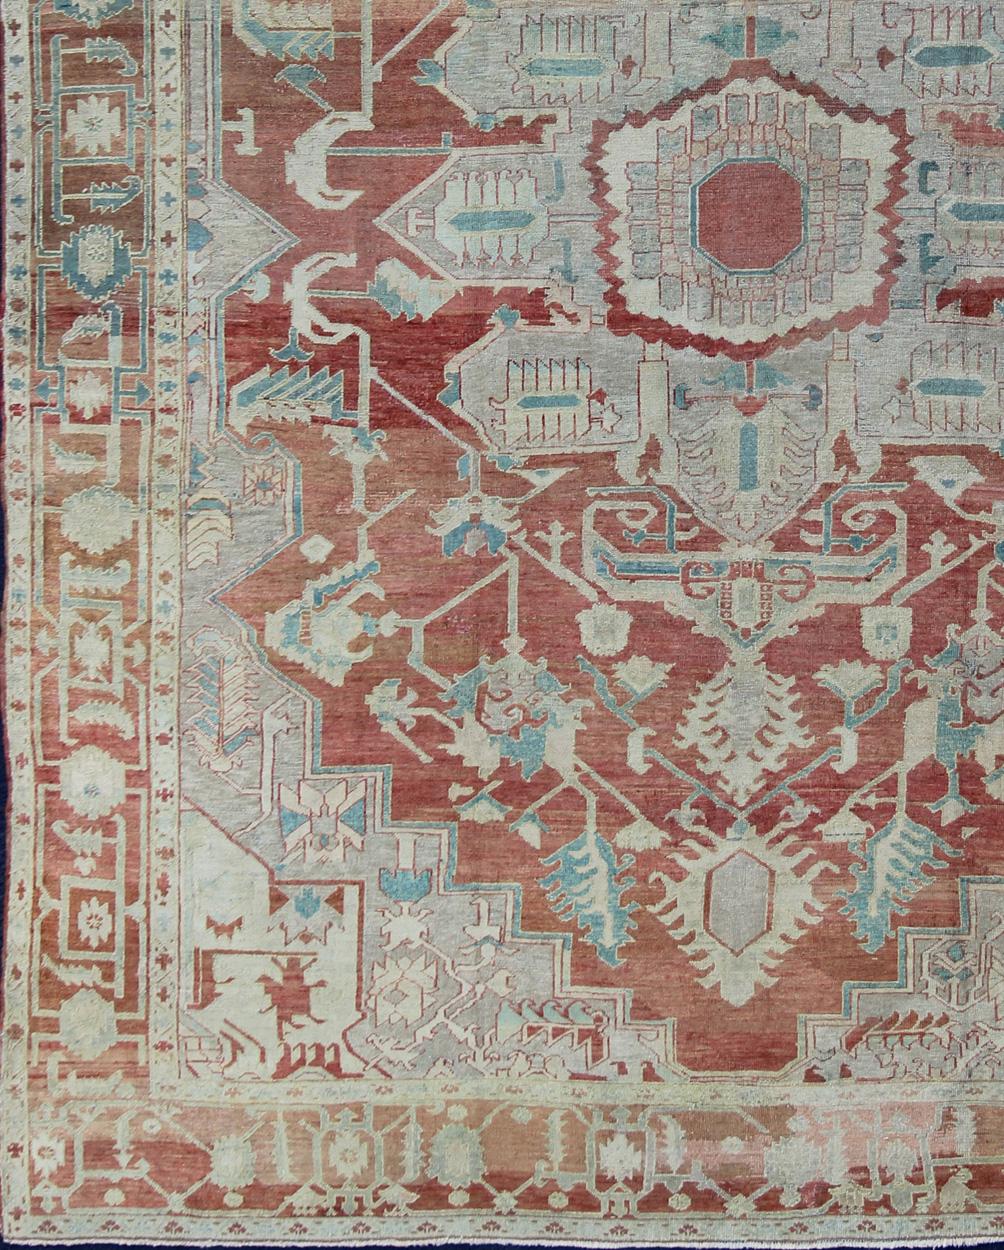 Antiker großer persischer Serapi-Teppich in sanftem Rot, Taupe, hellem Petrol, Creme, Hellgrün und Stahlblau. Vorleger / D-0402. Dieser Serapi-Teppich aus dem späten 19. Jahrhundert zeigt eine helle Farbpalette und ein geometrisches Muster. Ein